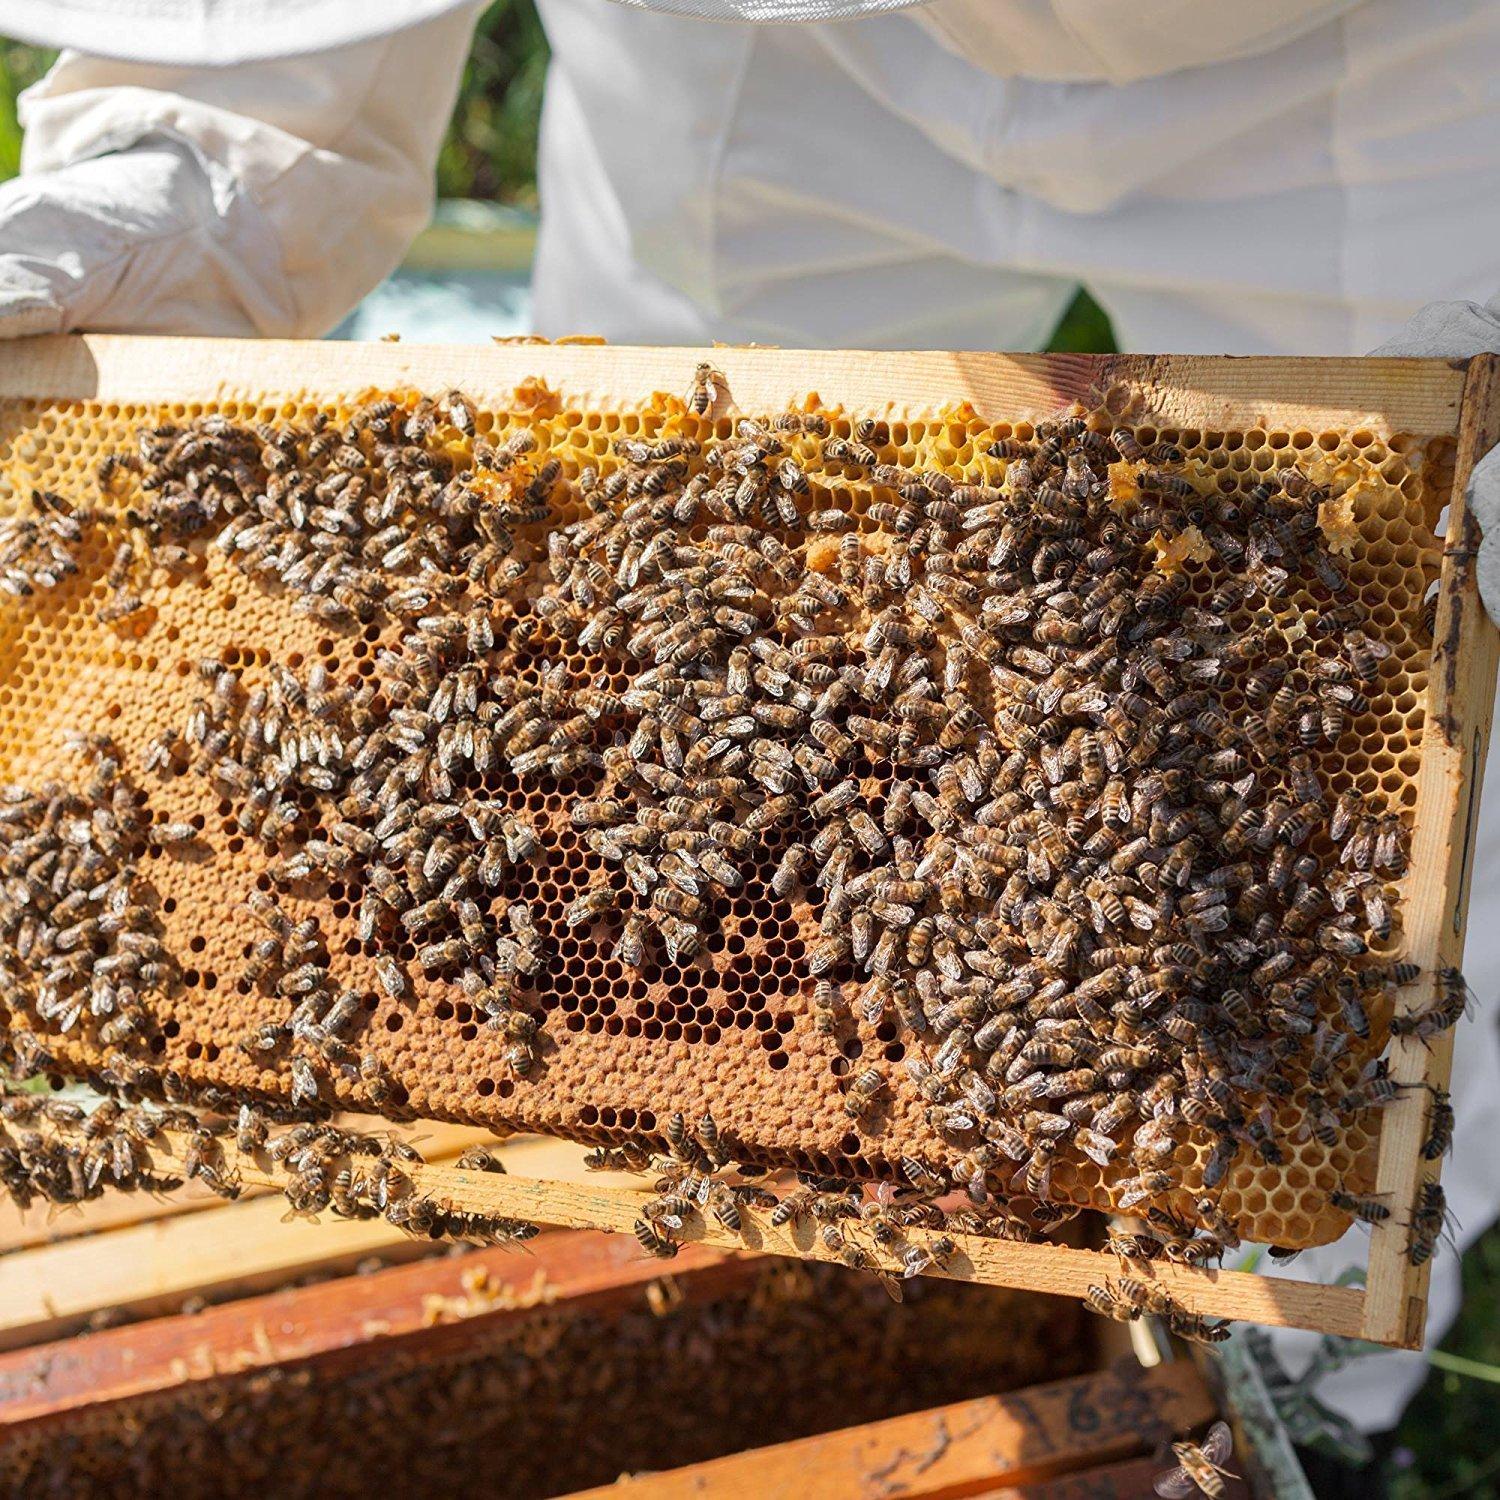 Beekeeper Made Beeswax Bulk Lip Balm, 40 Count Honey Flavor